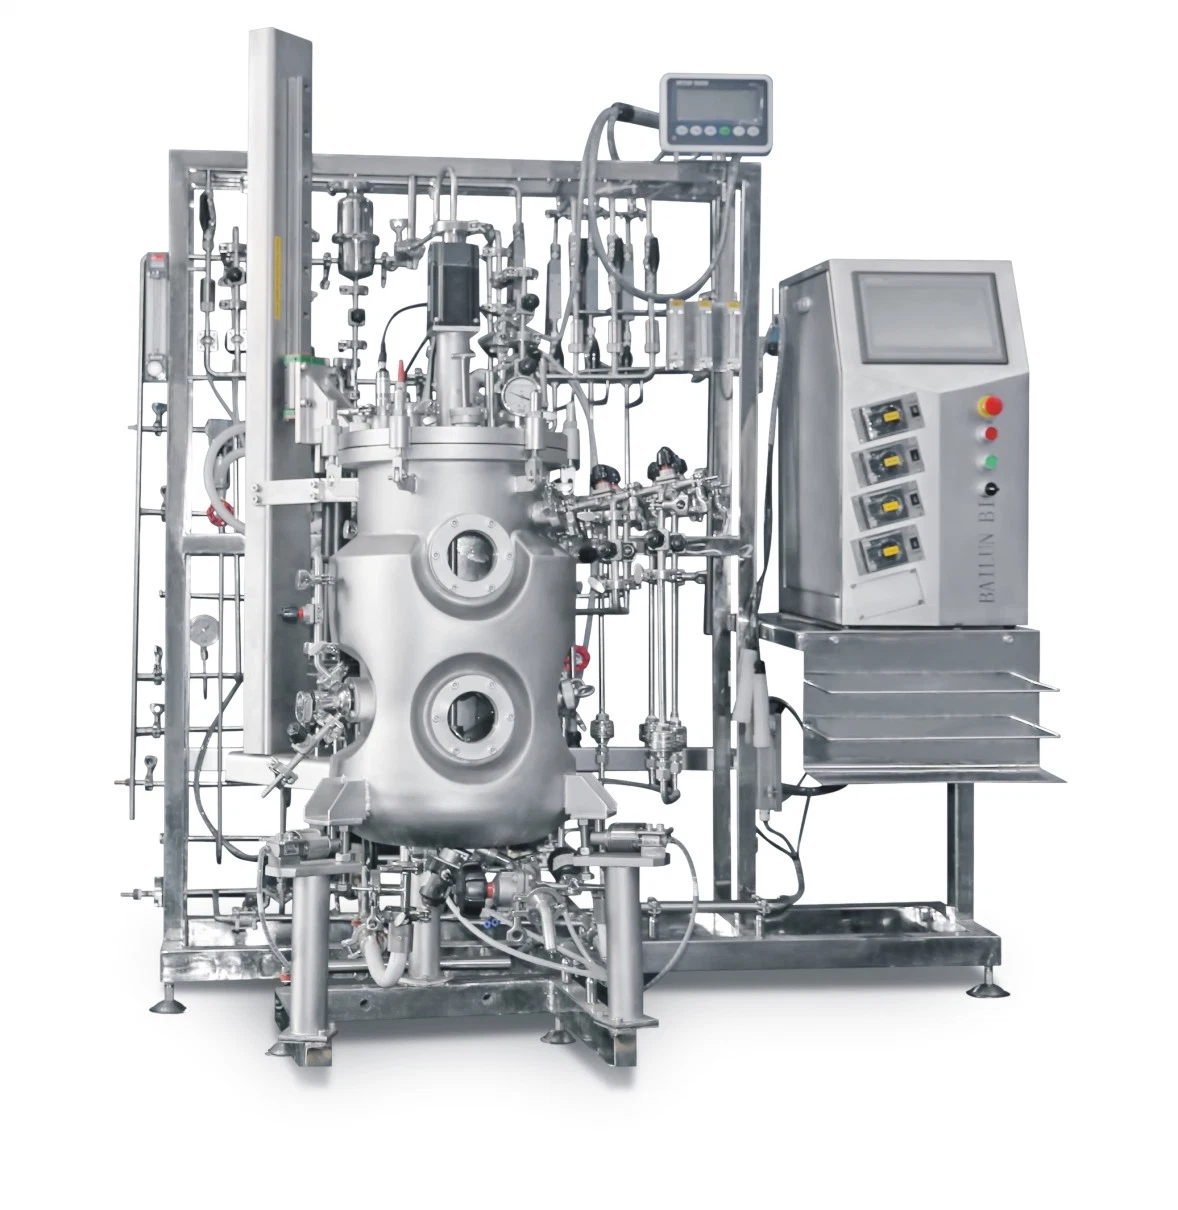 Sistema Fermenter de biorreator de lote da Fed Industrial inoxidável para células de mamíferos Utilizado na tecnologia de desenvolvimento de investigação, fermentor automático do biorreator